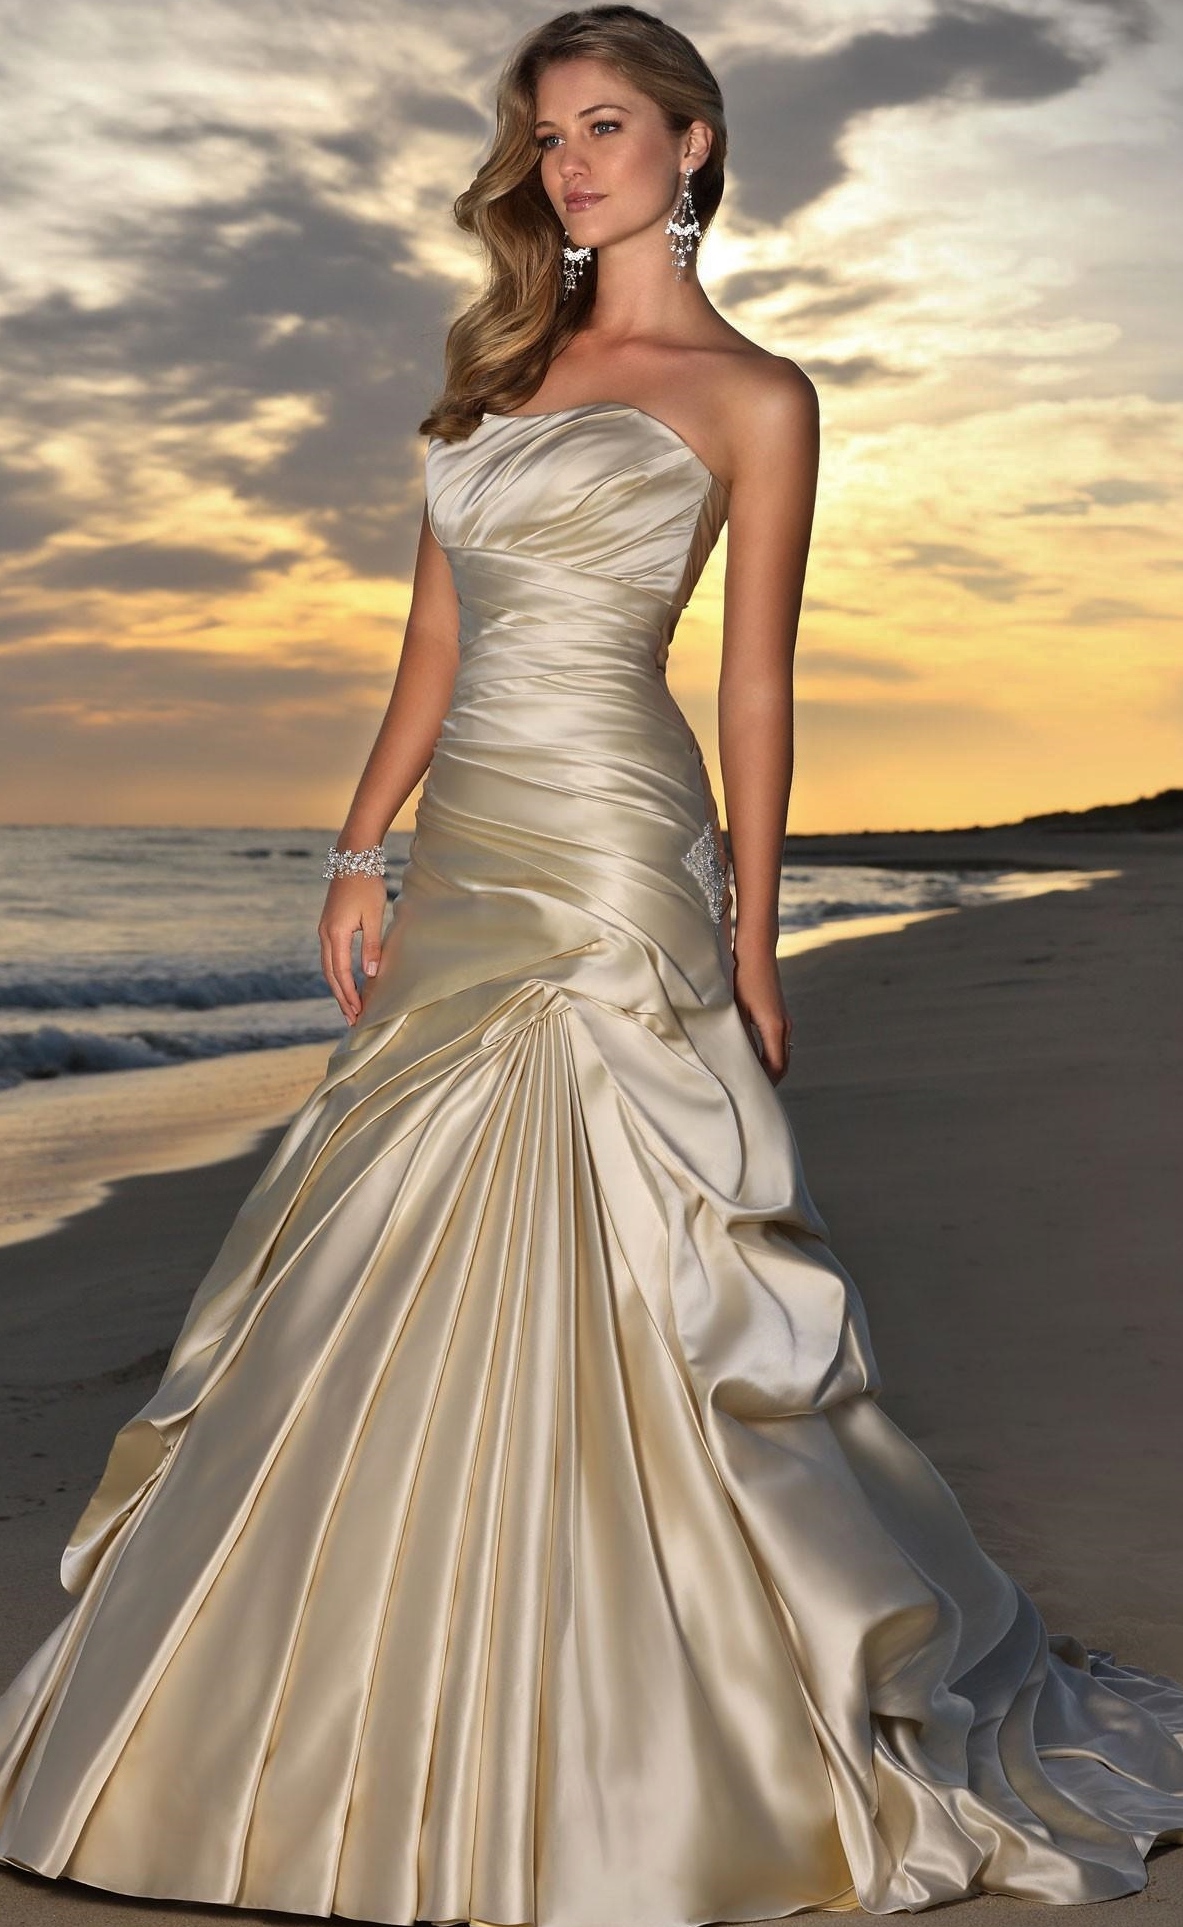 Платье Цвета Шампань фото в формате jpeg, большой выбор качественных фото